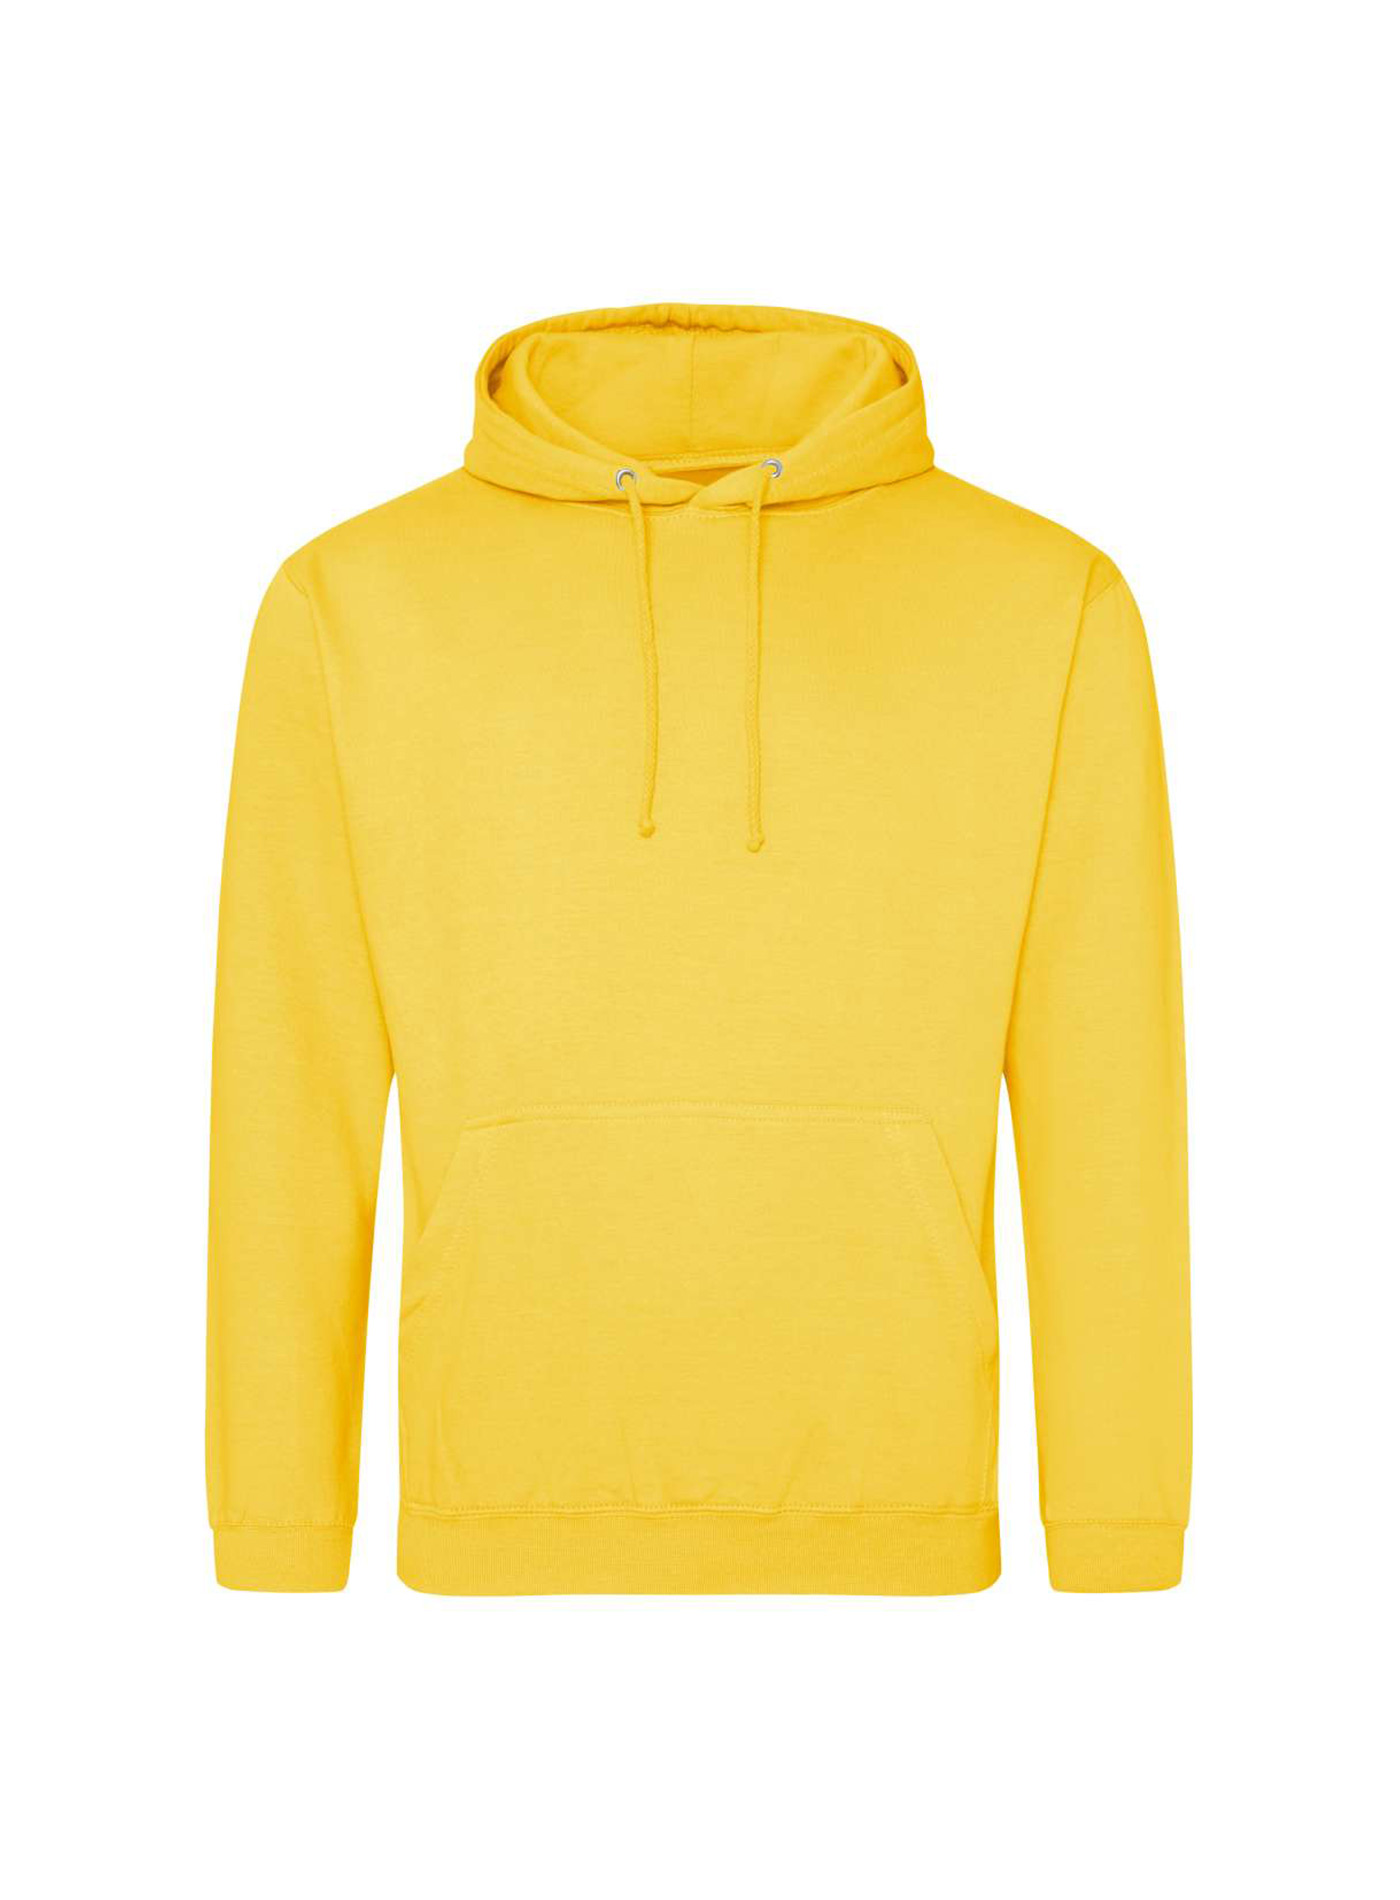 Mikina s kapucí unisex Just Hoods - Žlutá S